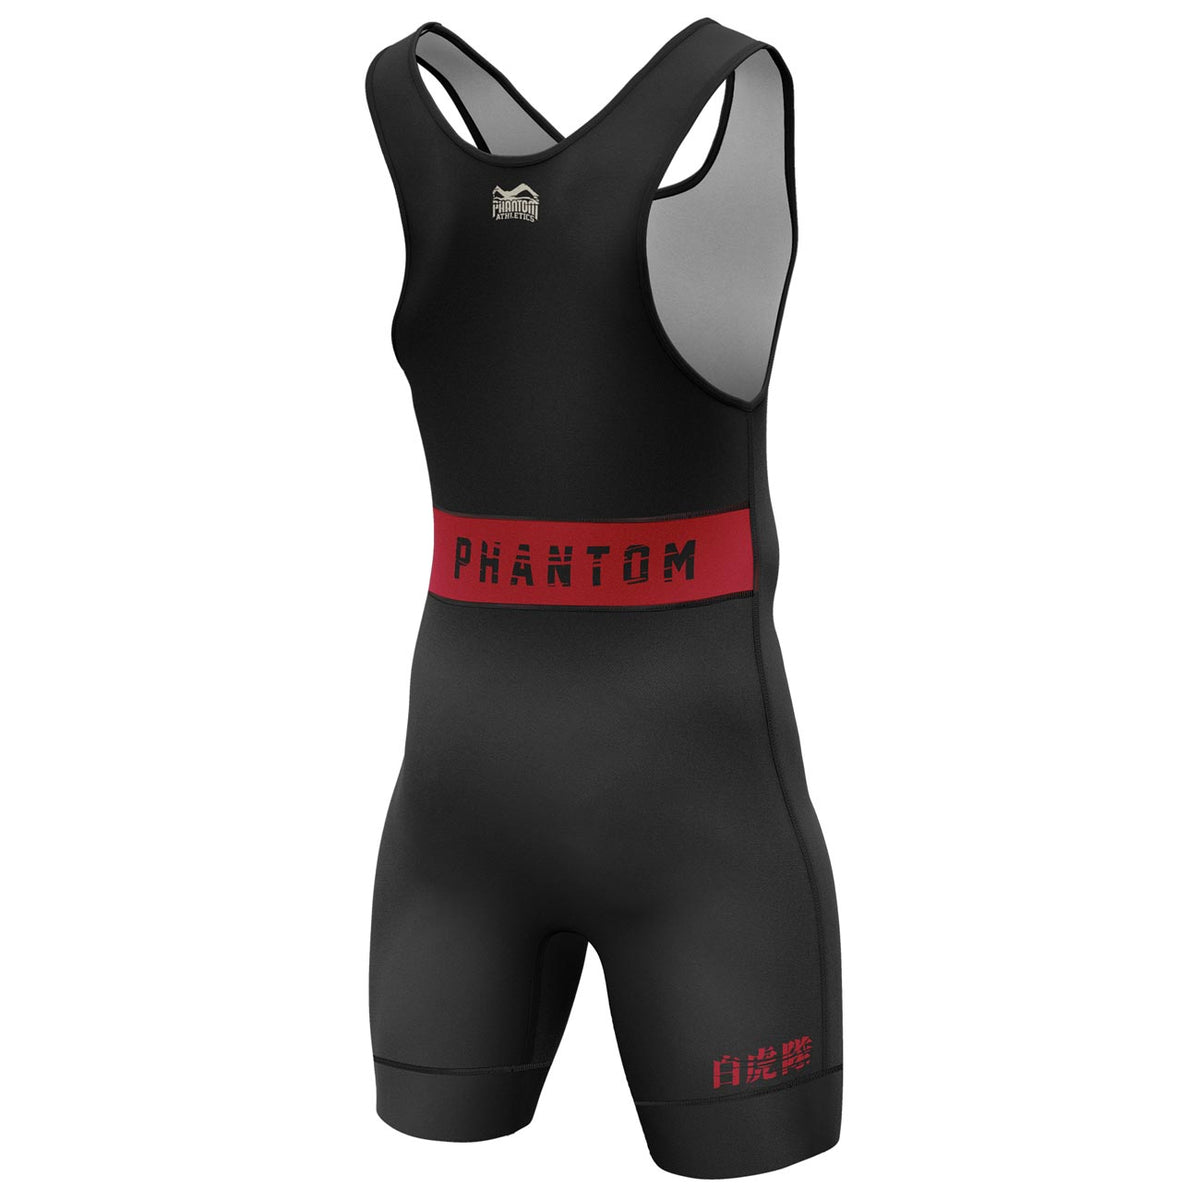 Phantom Ringertrikot TIGER UNIT in der Farbe Schwarz mit Tiger Design. Ideal für dein Ringer Training. In hervorragender Passform und Haltbarkeit für Training und Wettkampf.